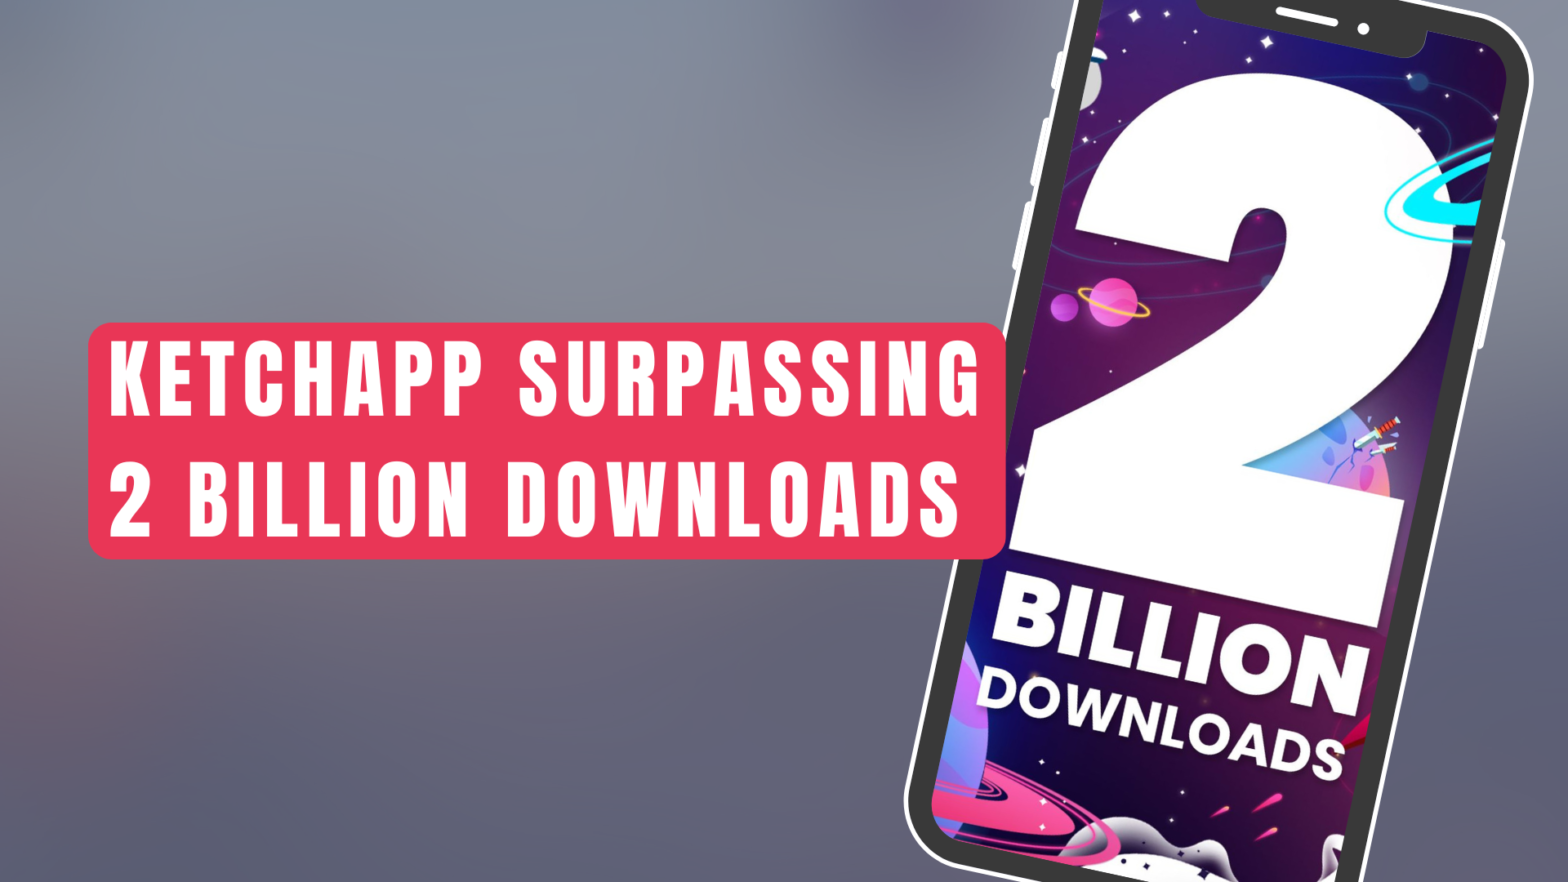 Ketchapp Surpassing 2 Billion Downloads